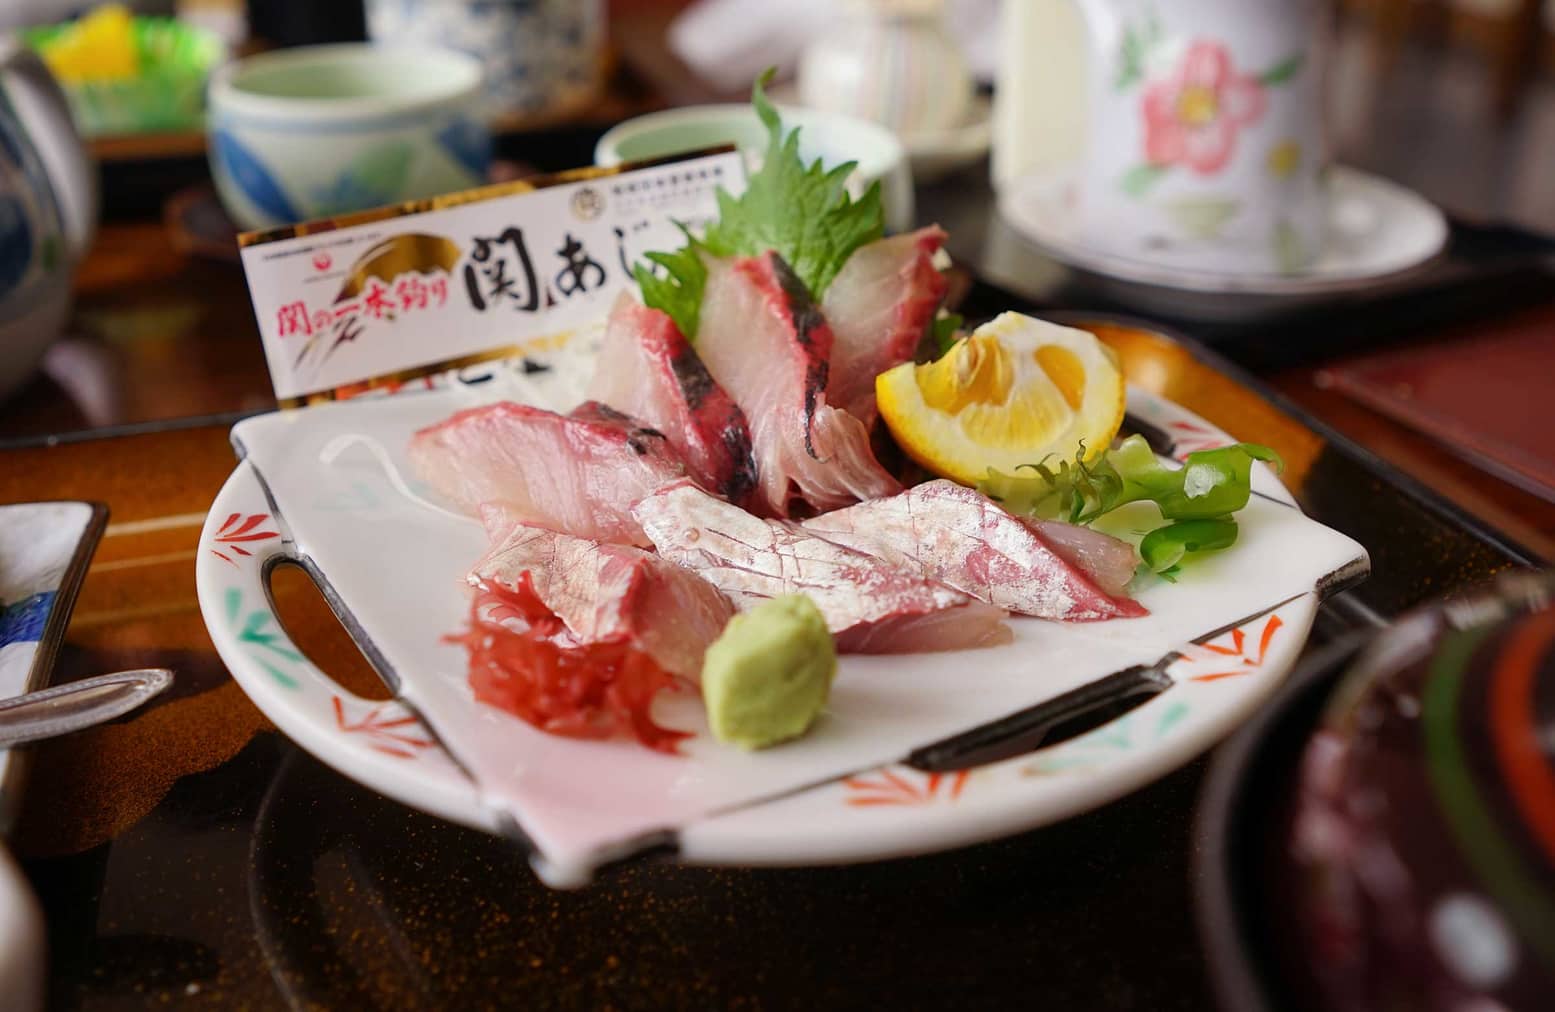 Kyushu cuisine